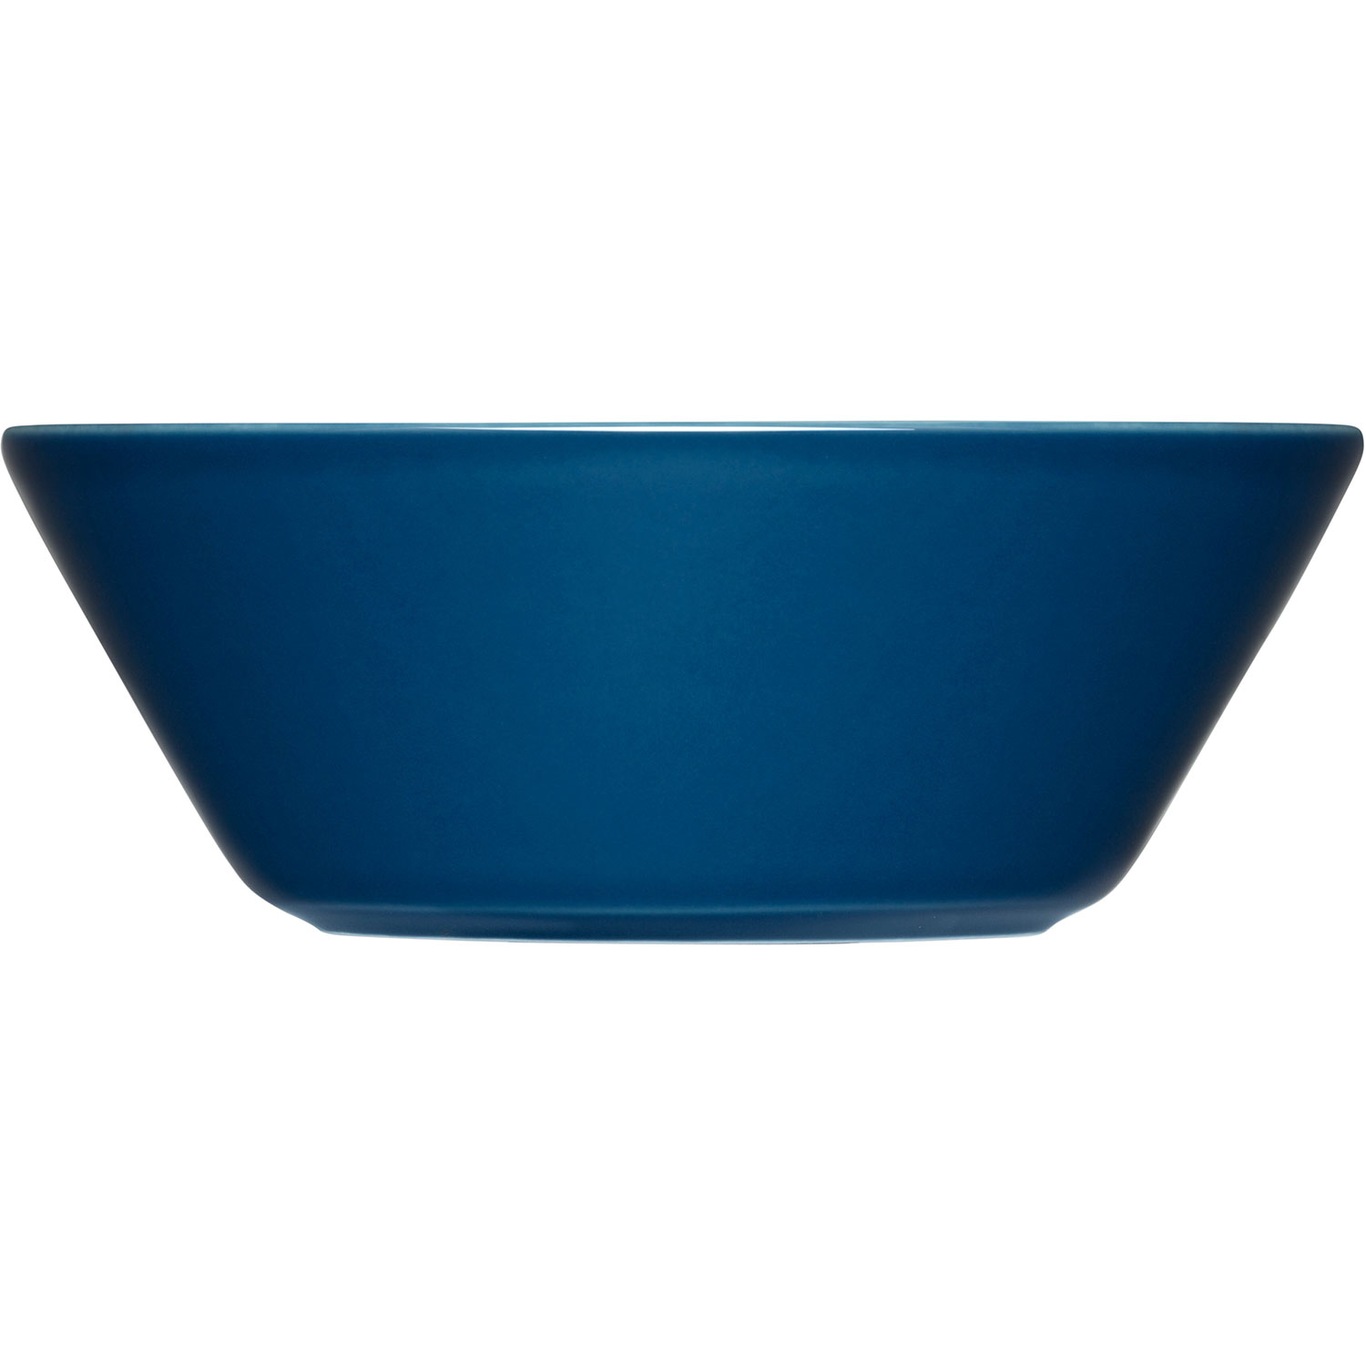 Teema Bowl 15 cm, Vintage Blue